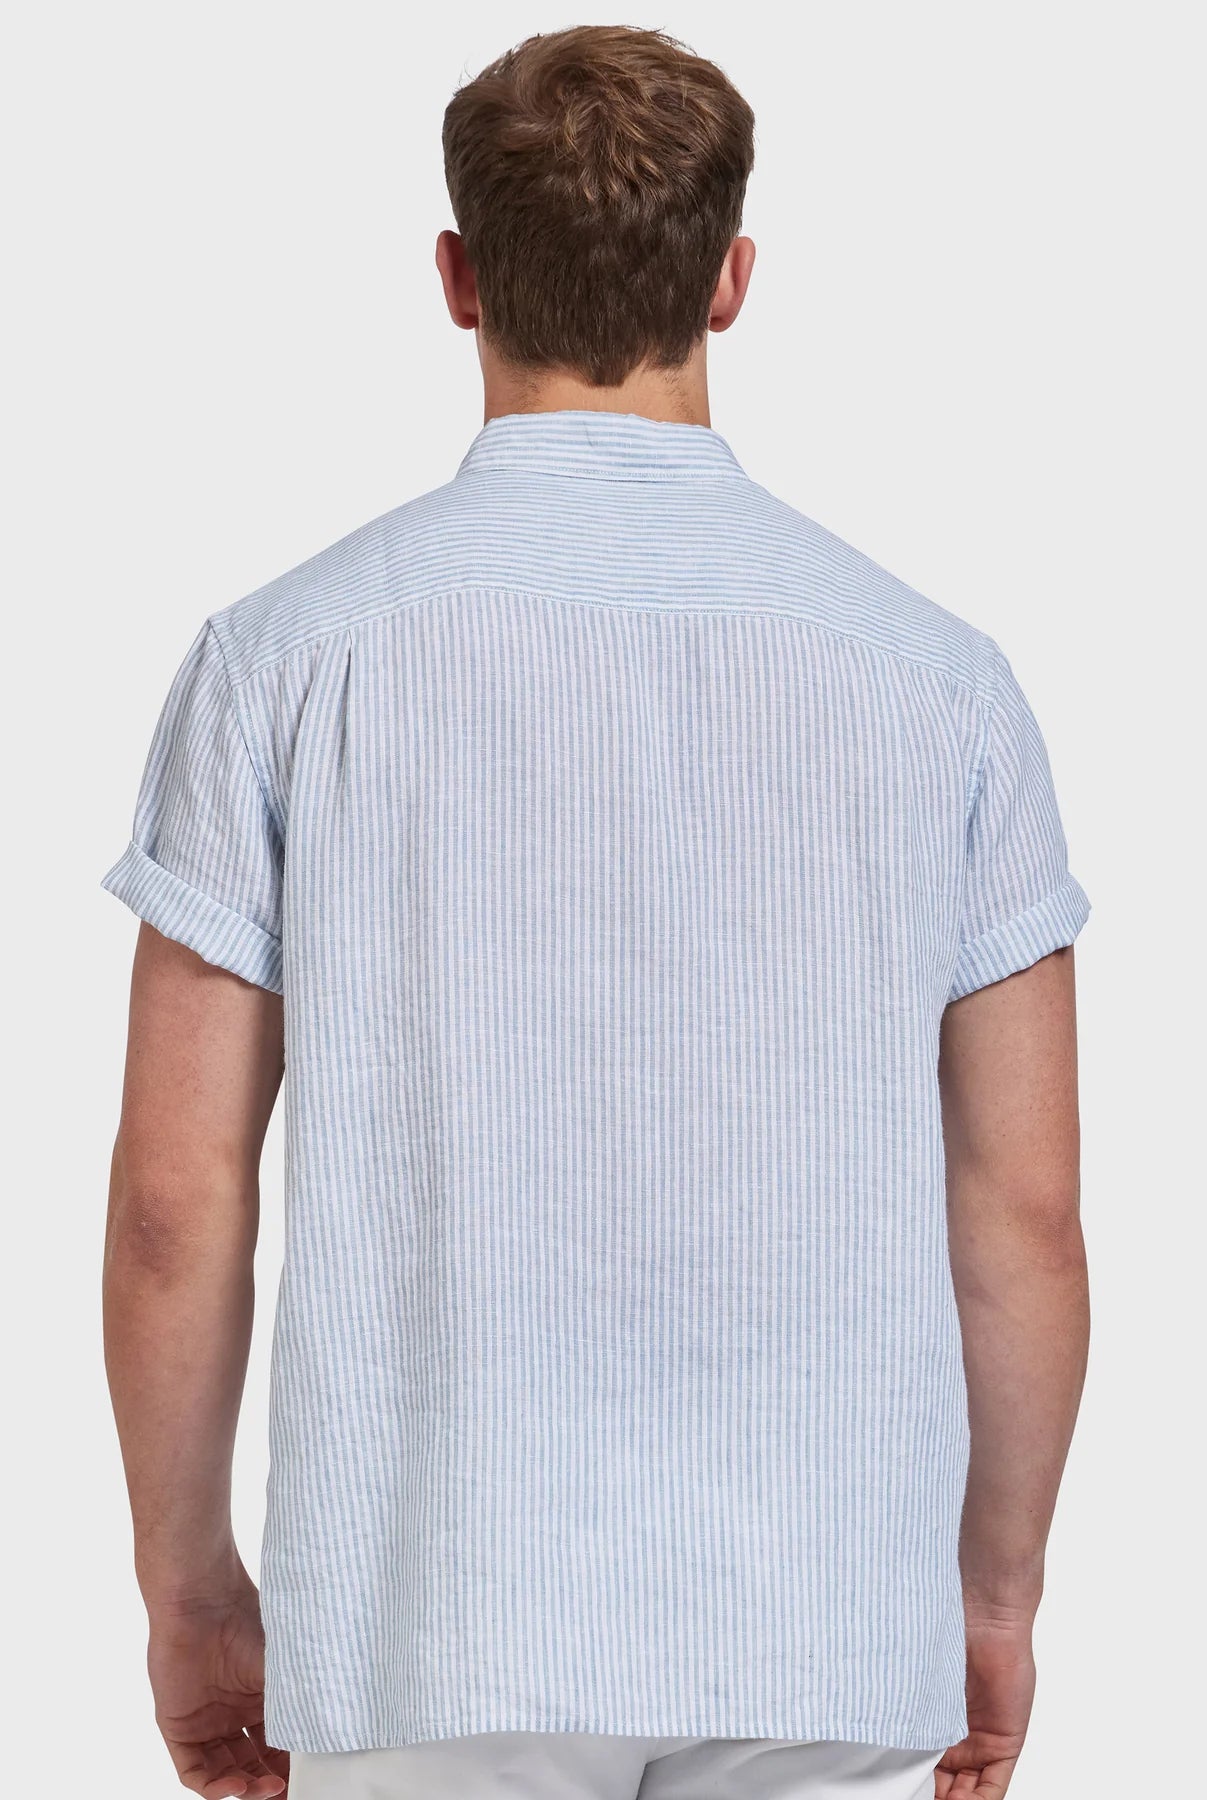 Rory Short Sleeve Linen Shirt in Atlantic Blue